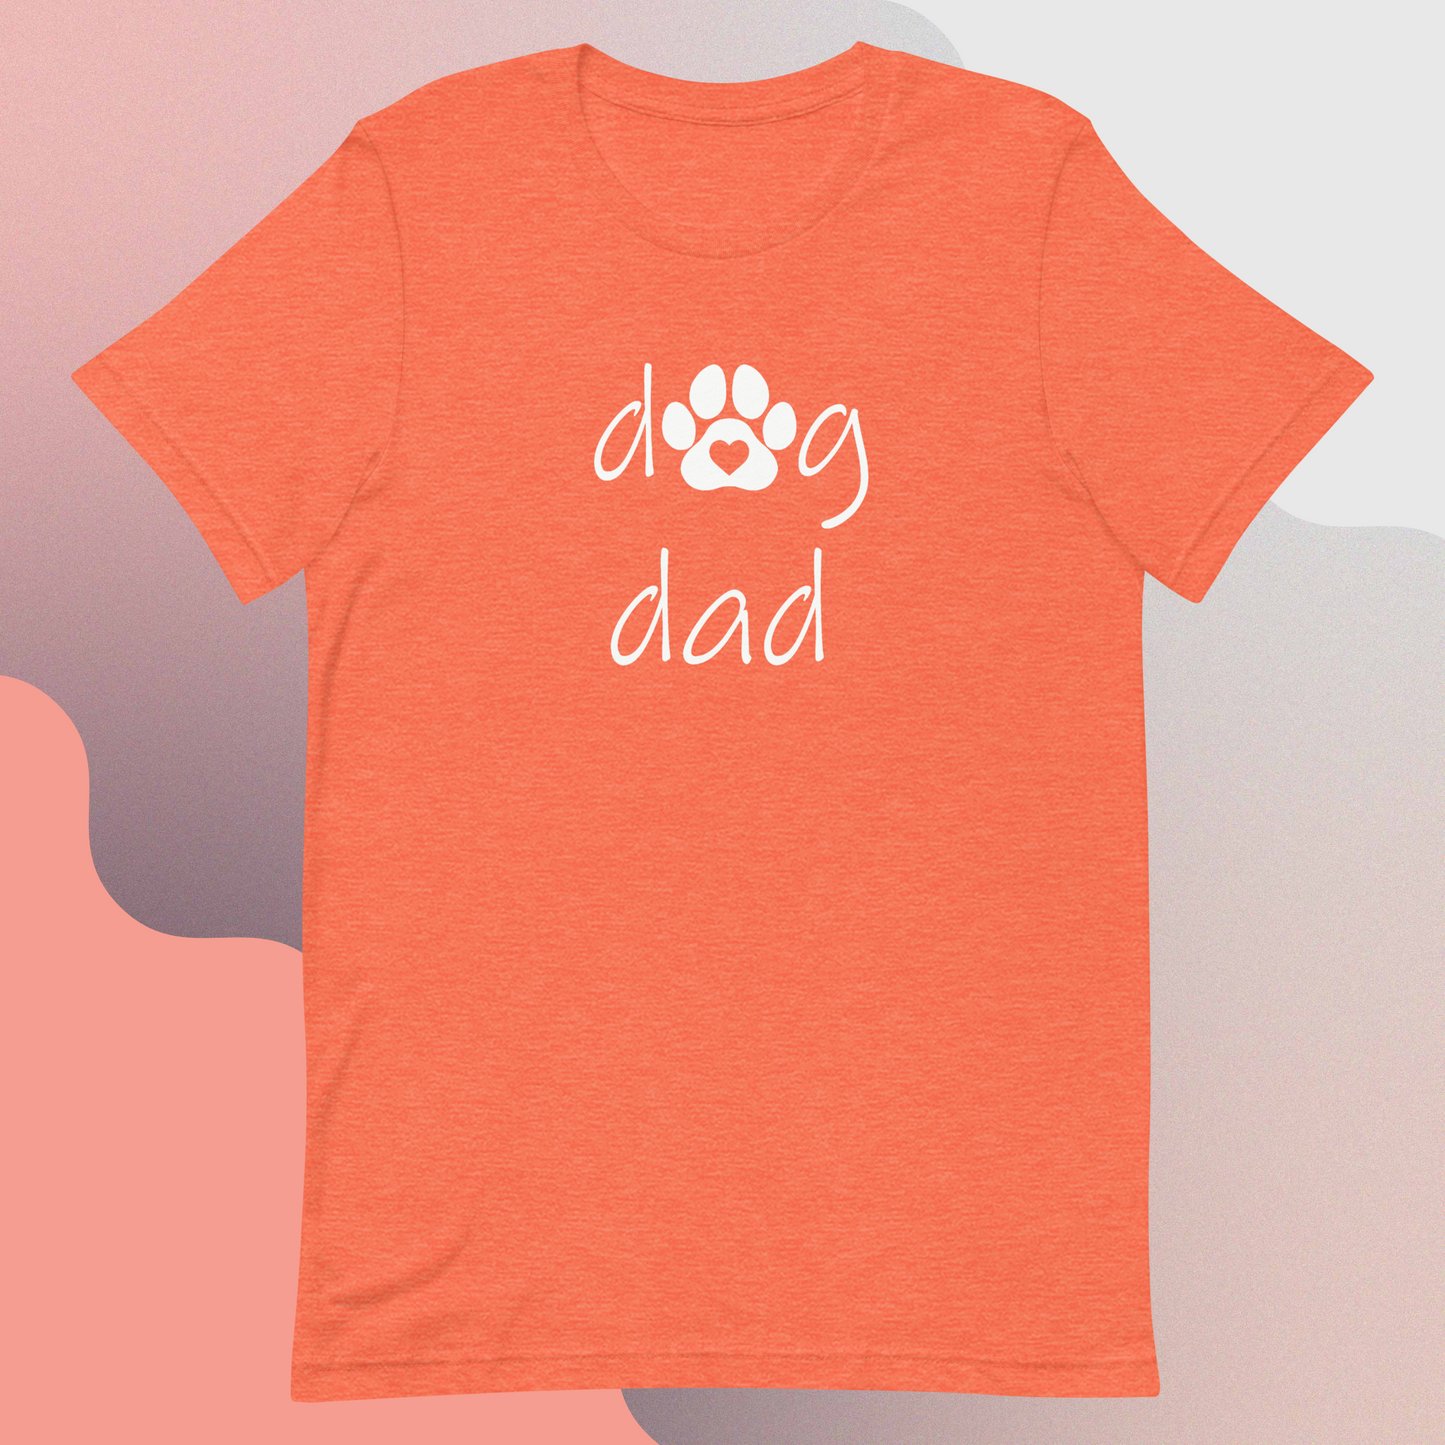 Dog Dad Men's t-shirt